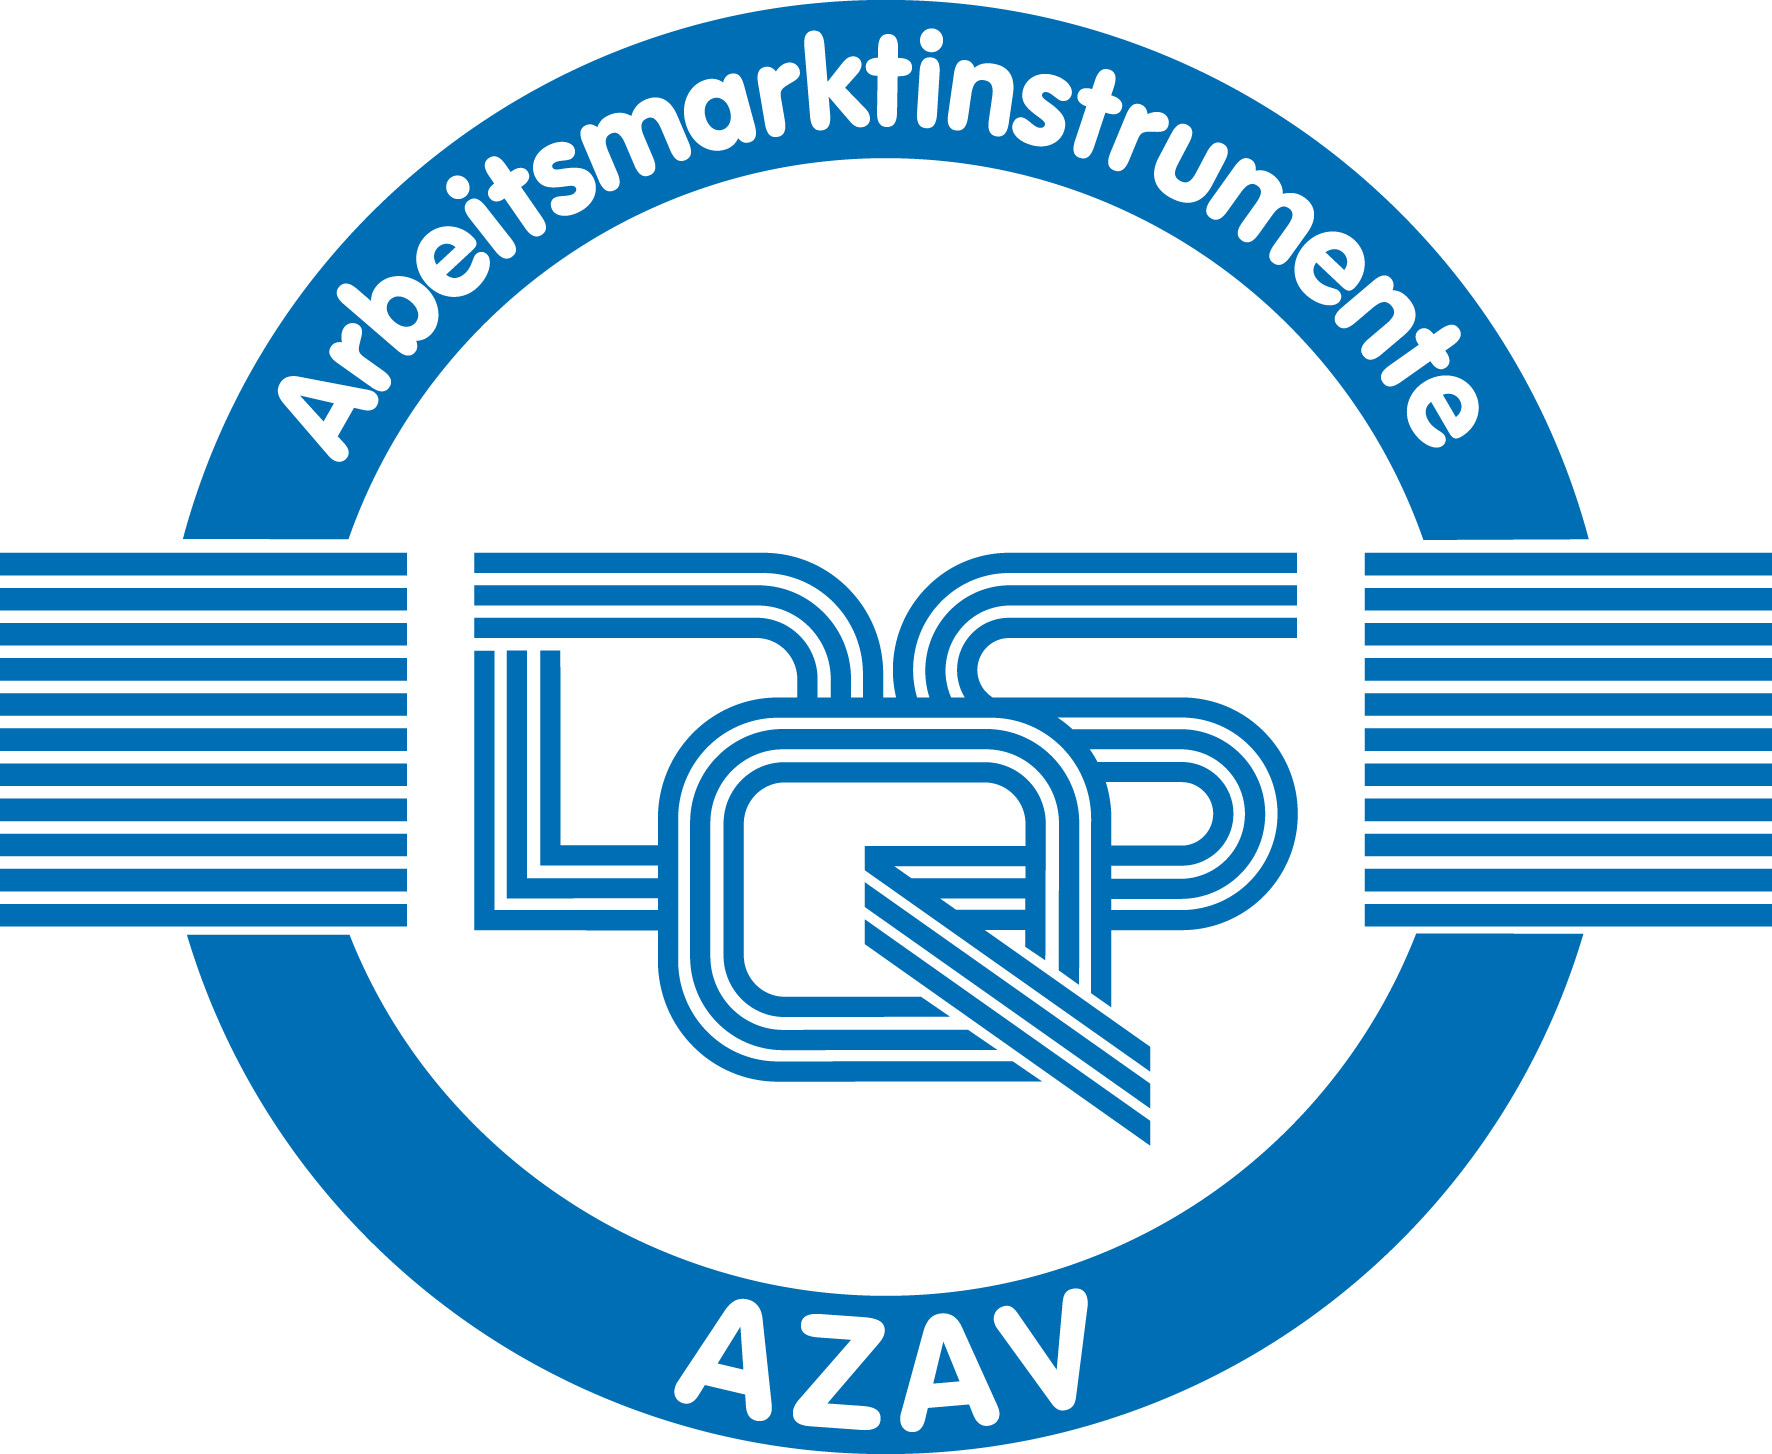 Logo Qualitätsaudit-Zertifikat nach der Akkreditierungs- und Zulassungsverordnung Arbeitsförderung.